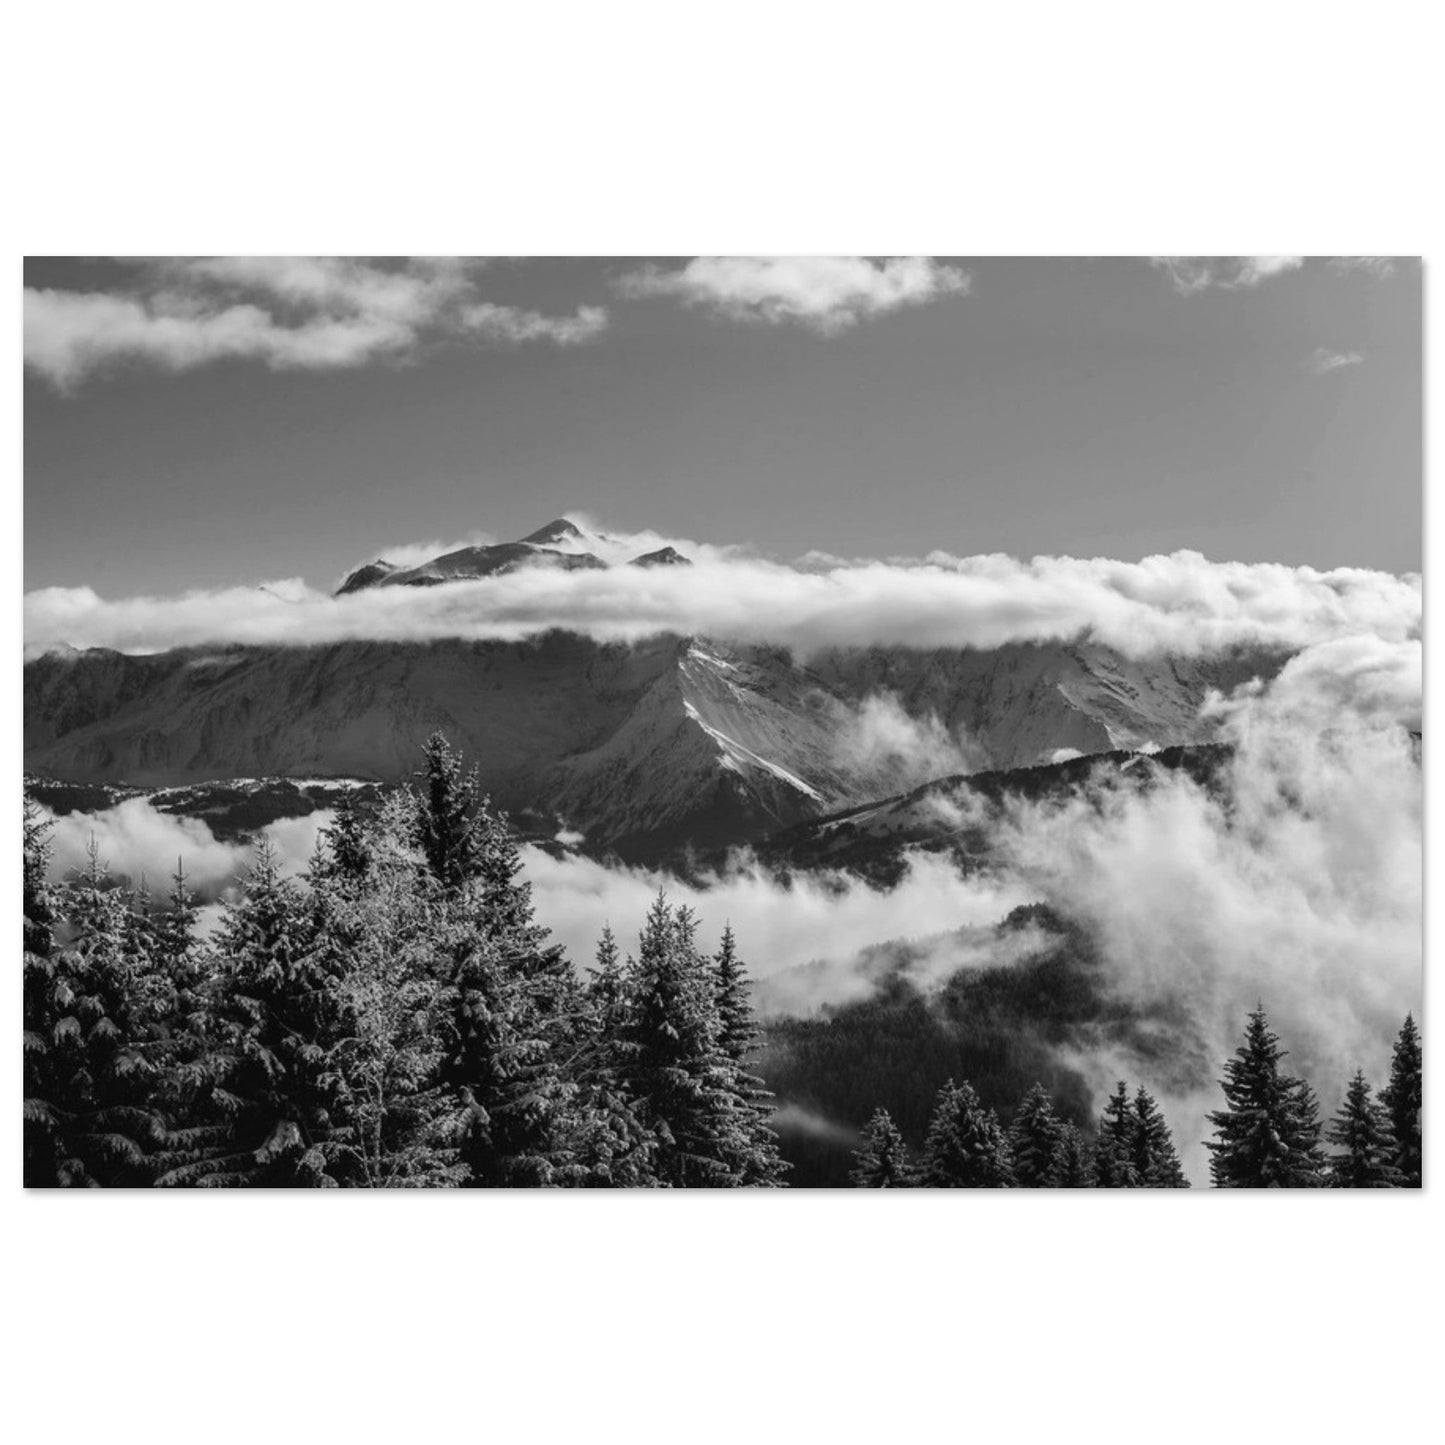 Vente Photo du Mont-Blanc et sapins enneigés - Noir & Blanc - Tableau photo alu montagne